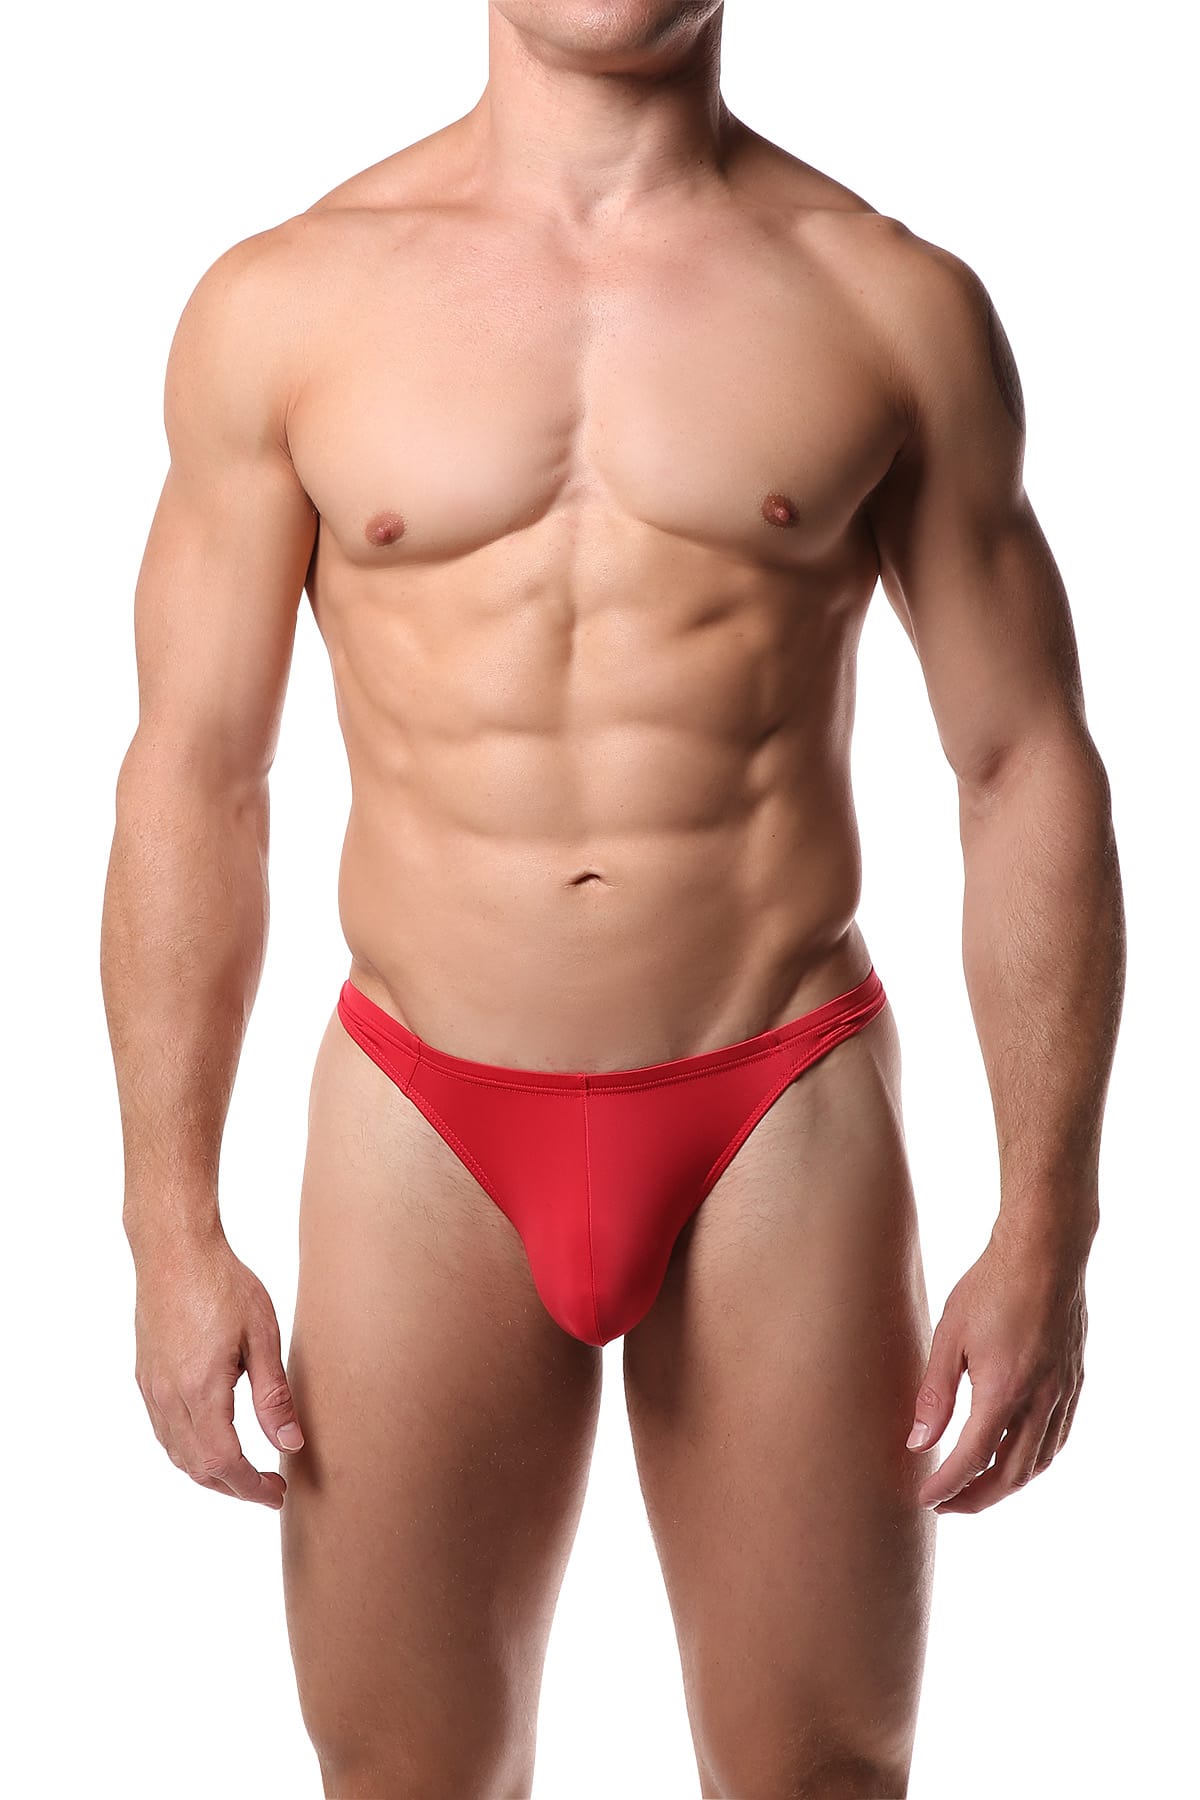 Manview Red Pouch Boy Bikini